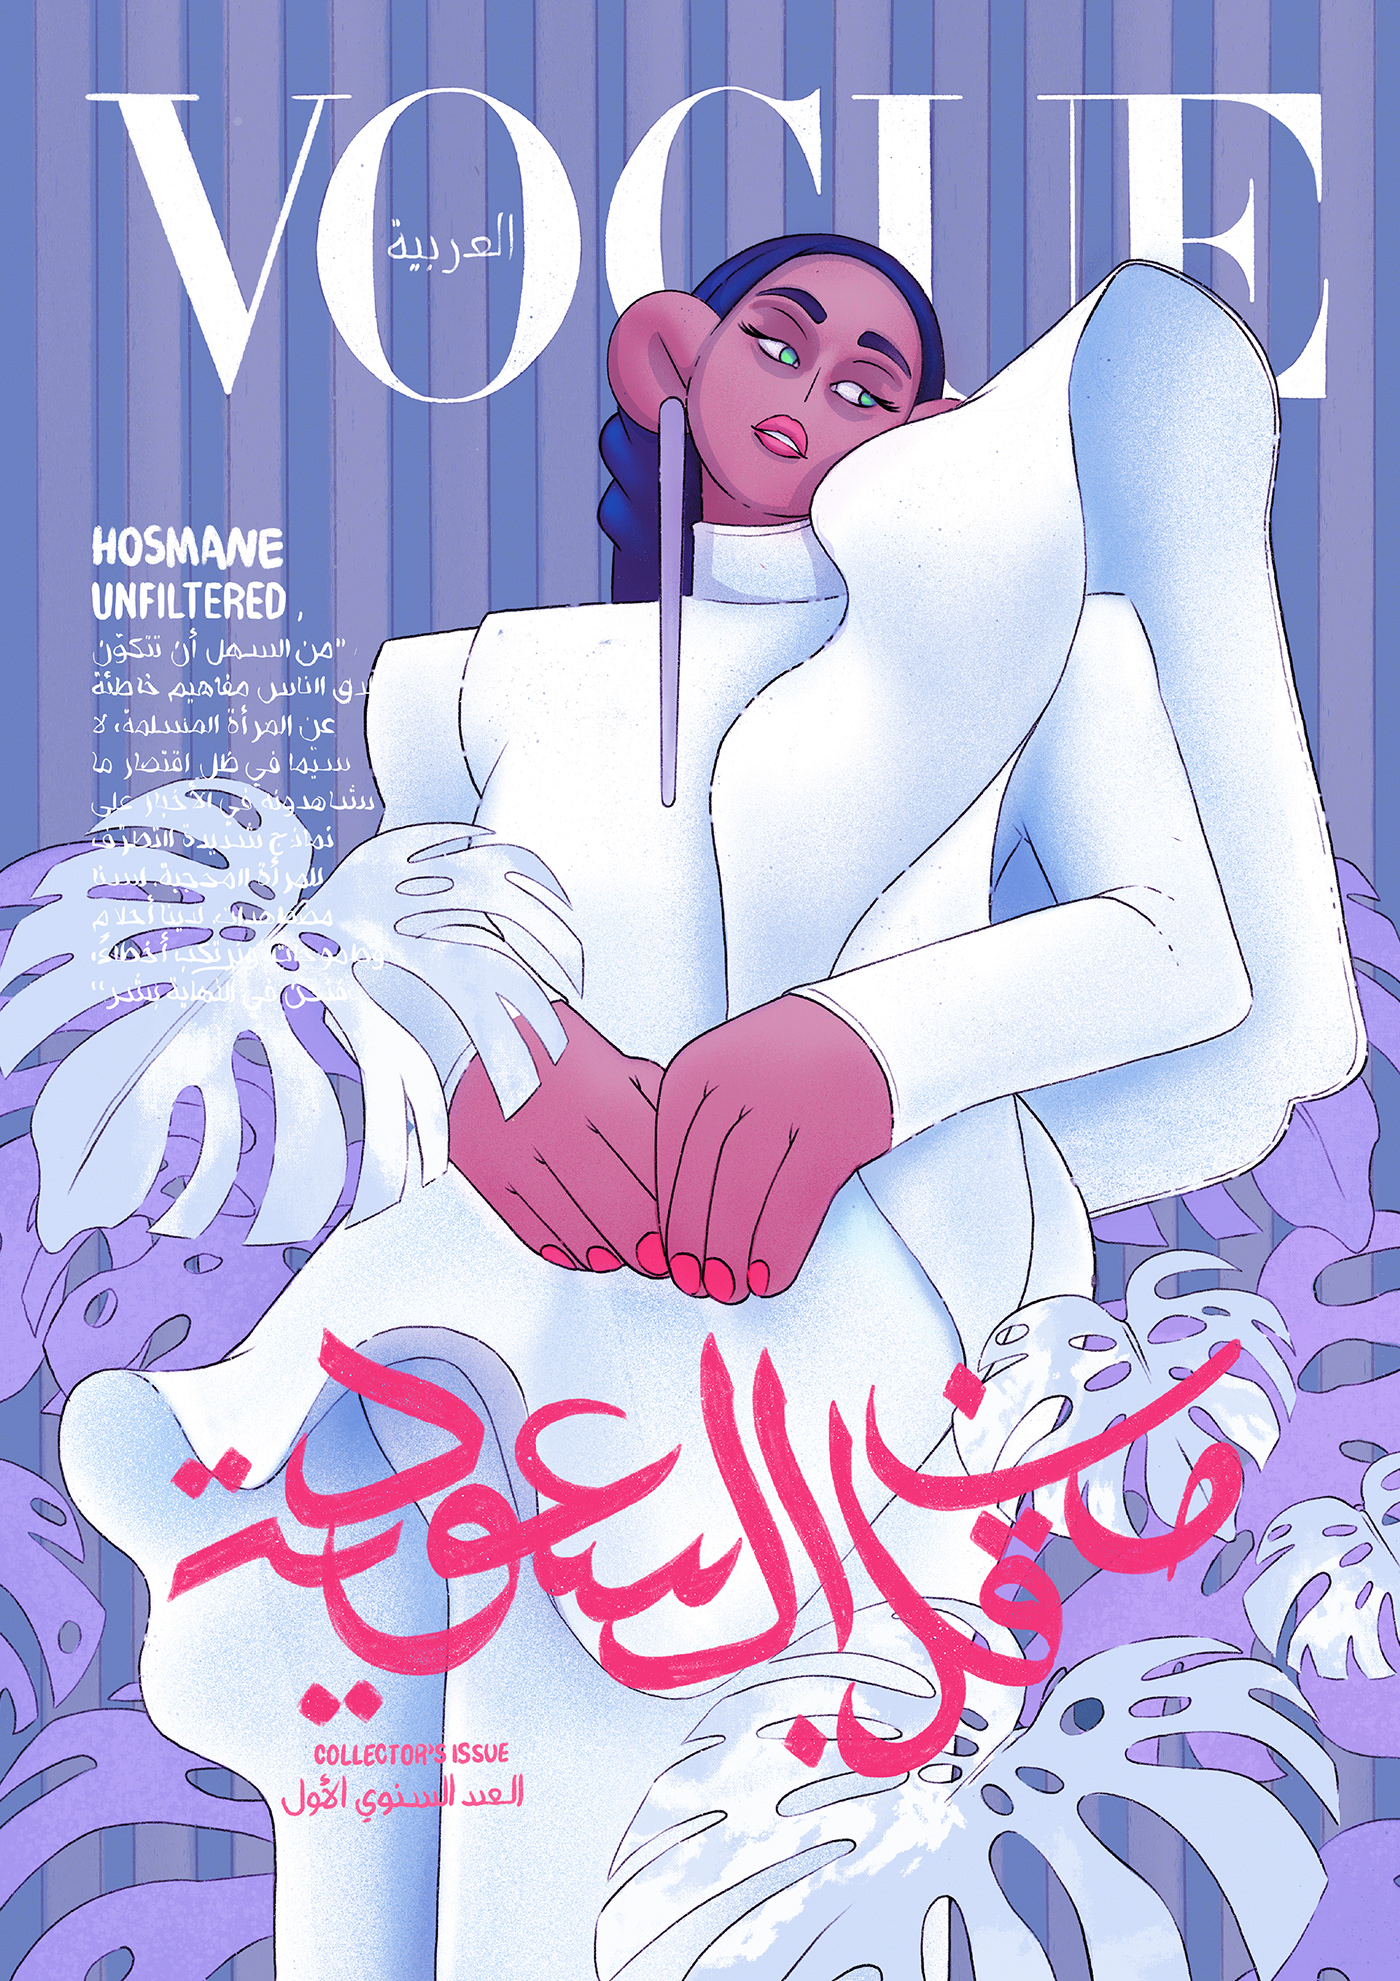 une illustration de couverture du magasine vogue arabie